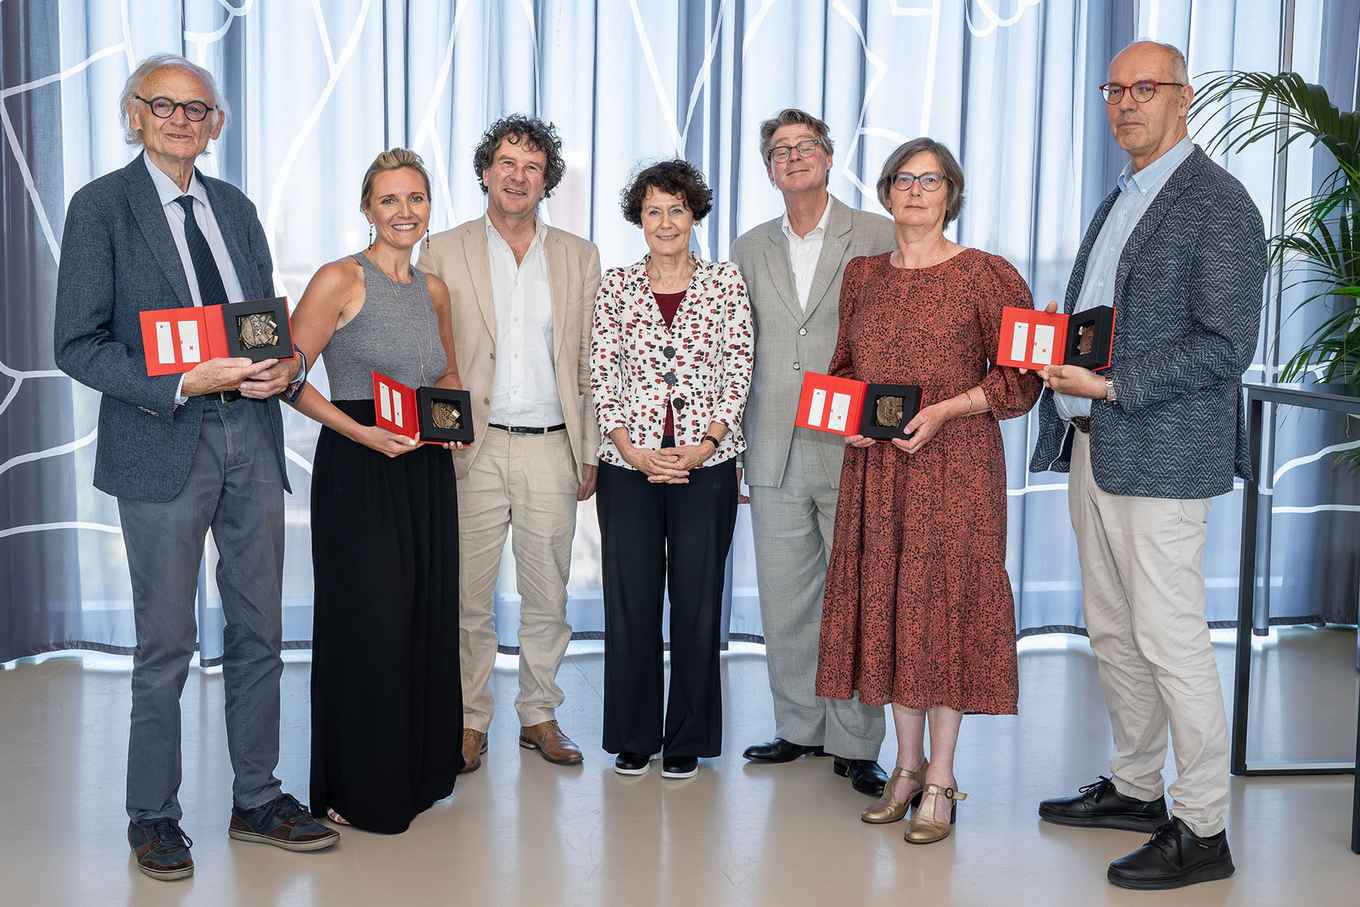 Left to right: Jan Laan, Jessica Piotrowski, Peter-Paul Verbeek, Geert ten Dam, Jan Lintsen, Hanneke Lips en Michiel van Kempen (photo: Van Harte Gefotografeerd)